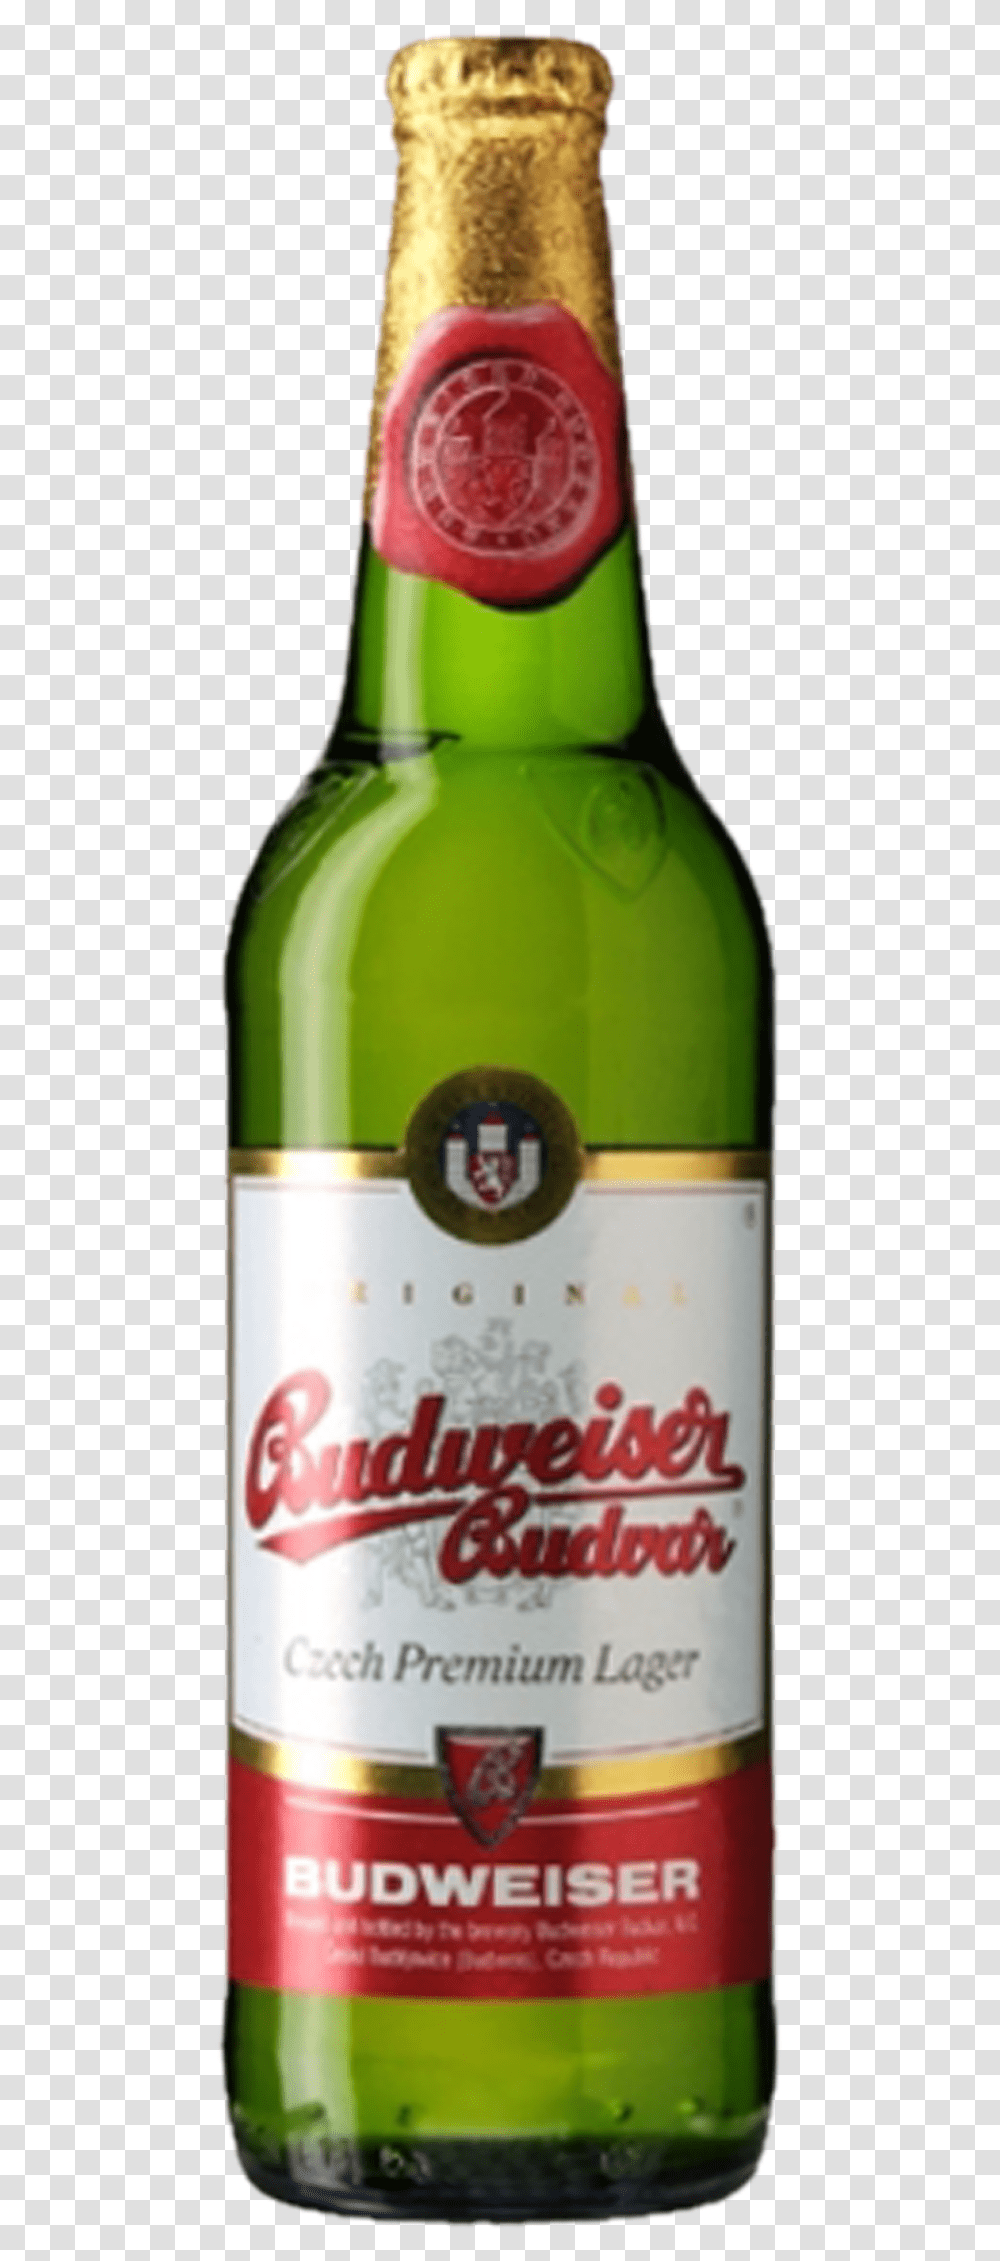 Budweiser Bottle Budweiser Budvar, Alcohol, Beverage, Wine, Beer Transparent Png